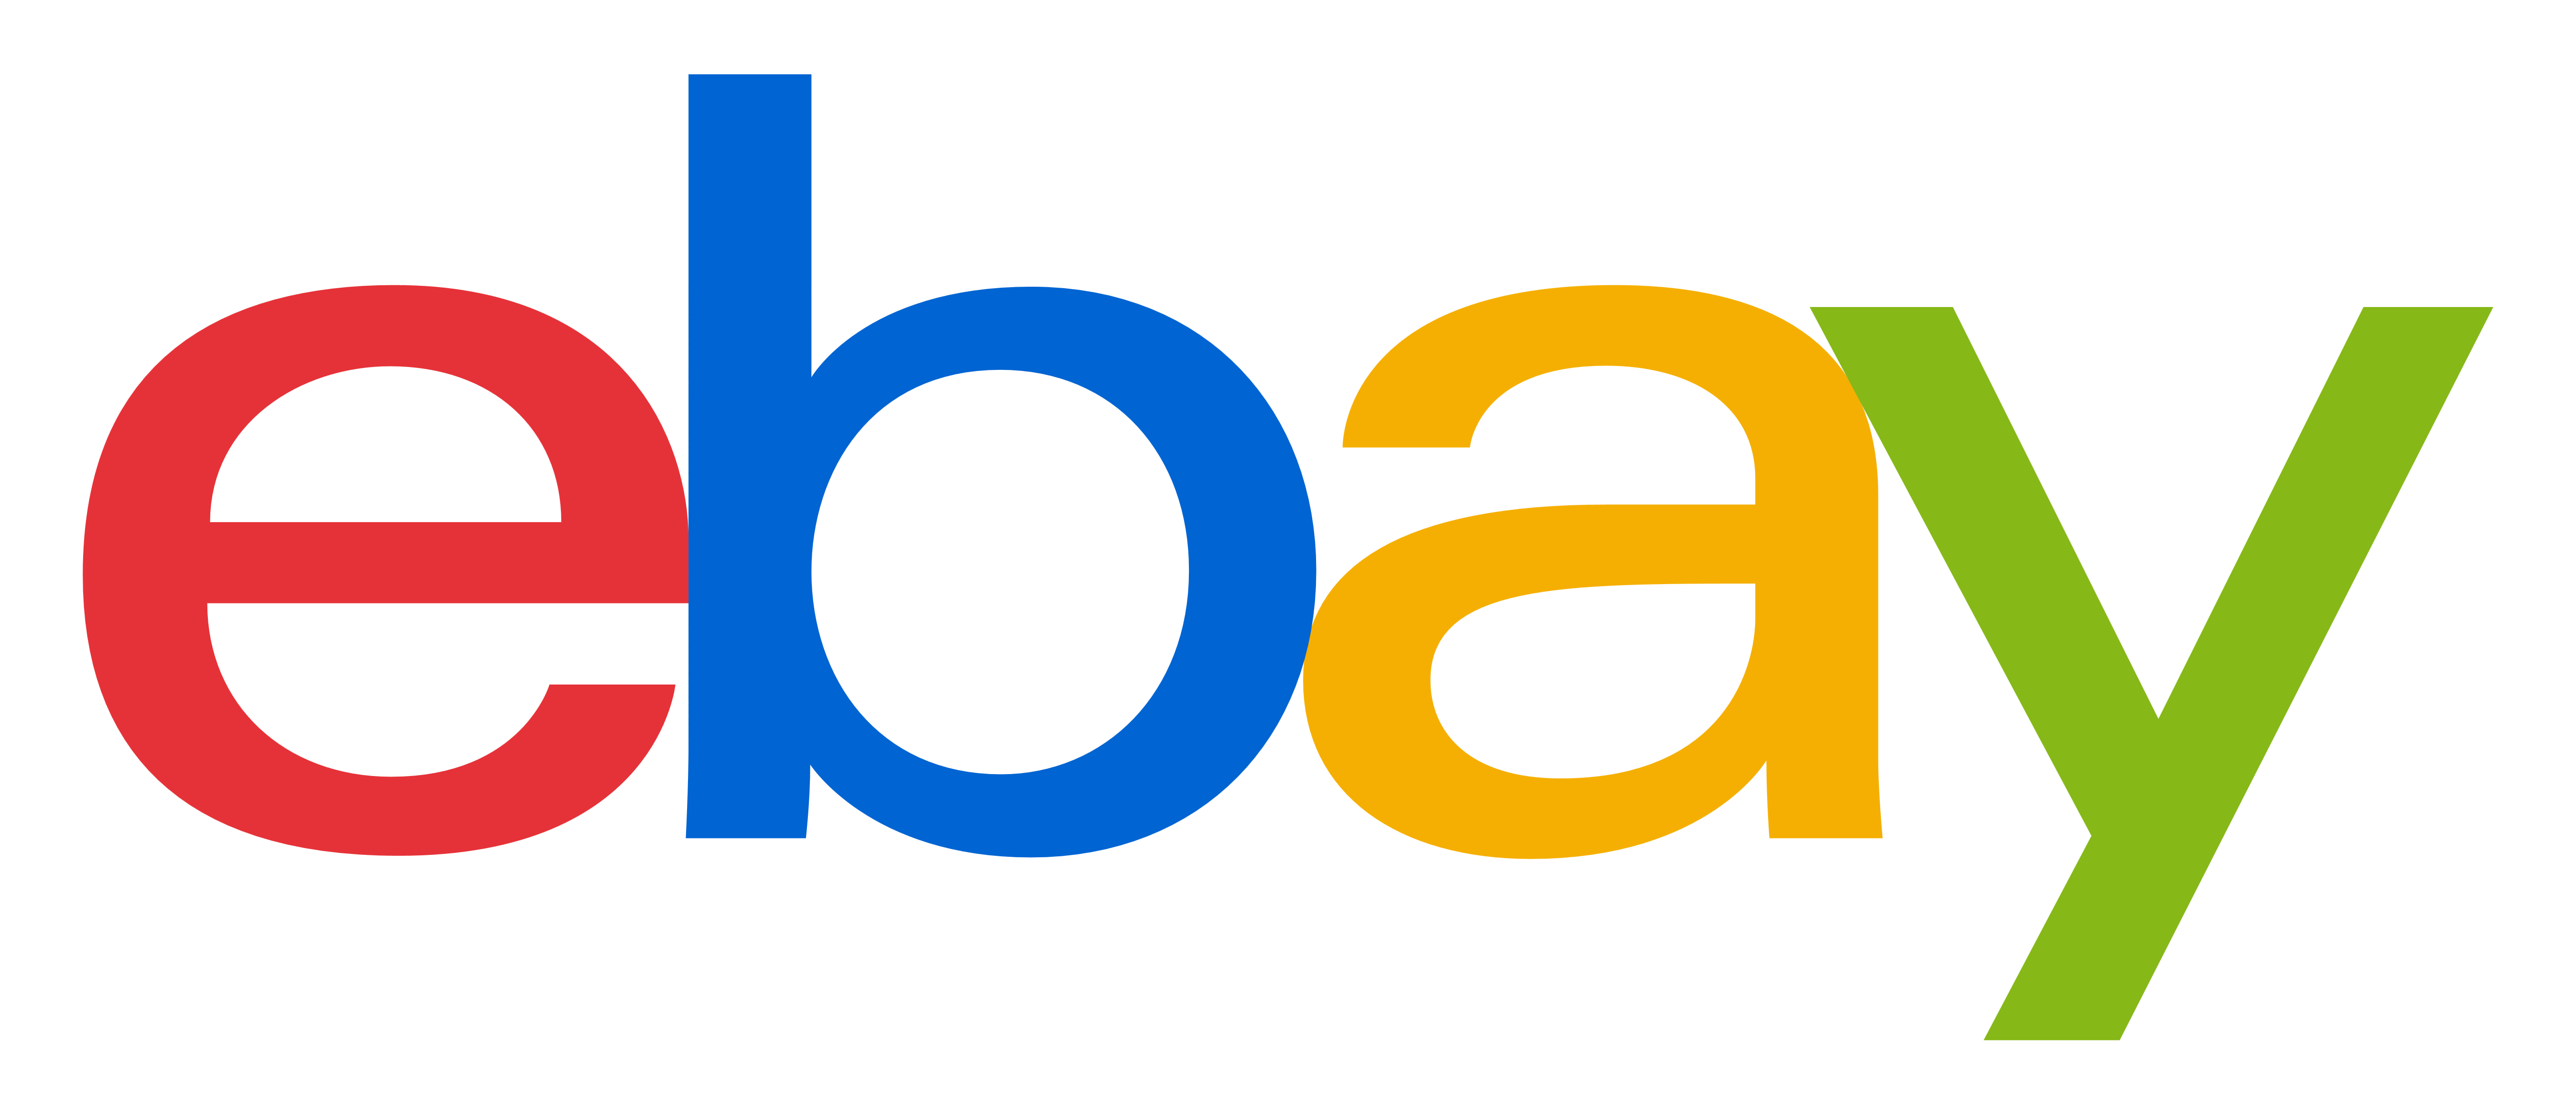 Ebay Logo Transparent Images